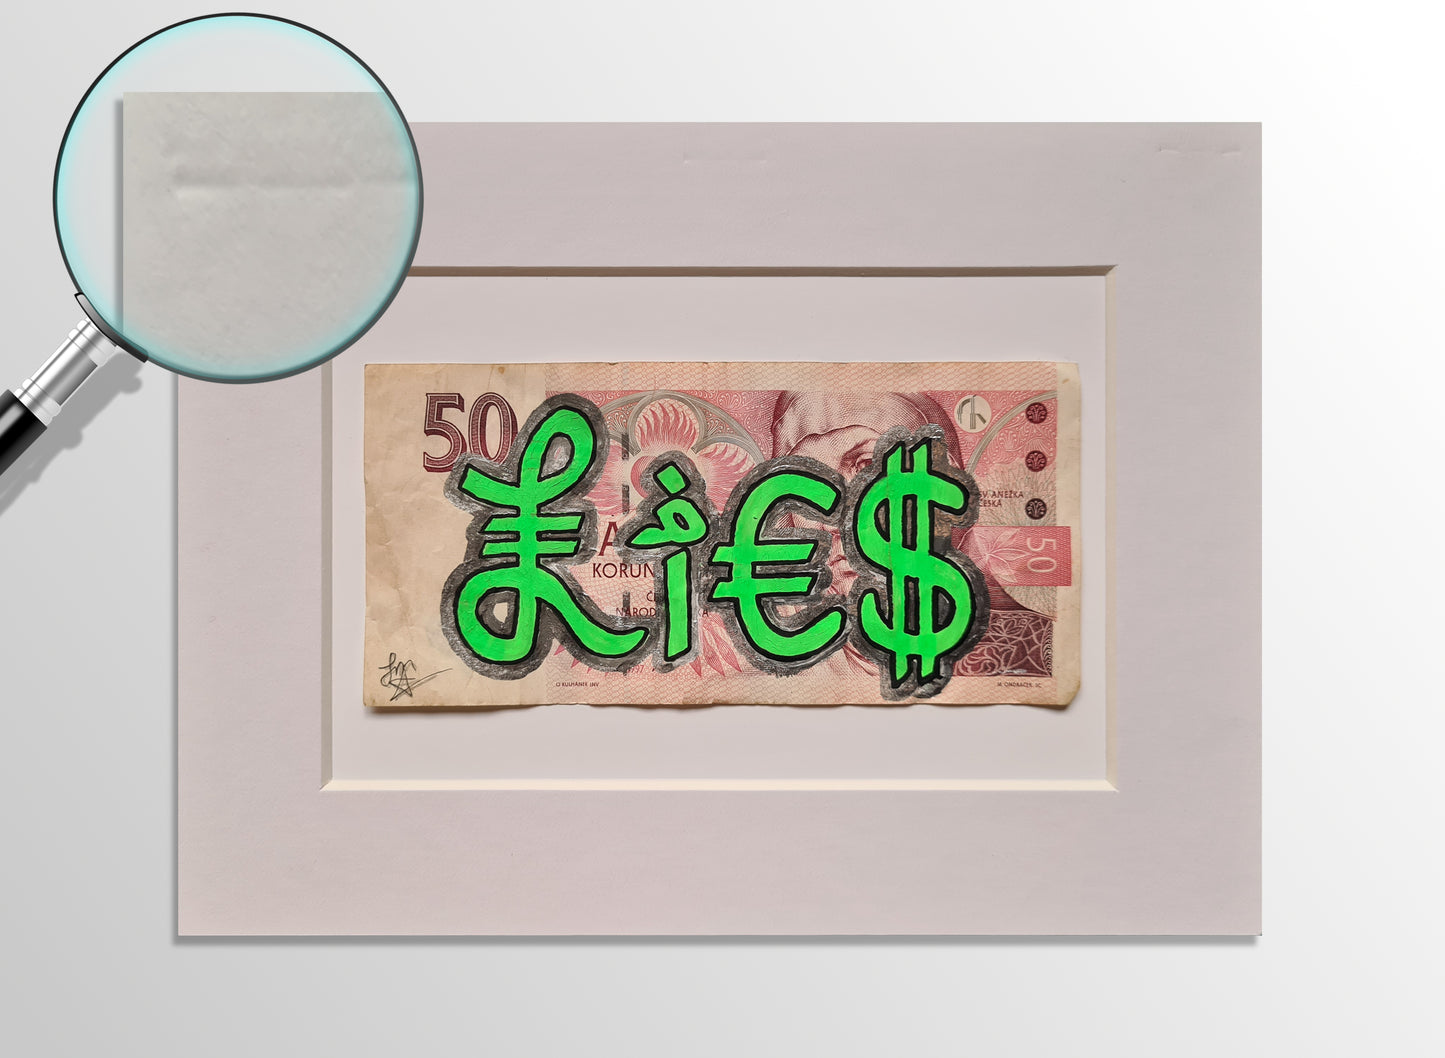 LIES - Art on genuine banknote